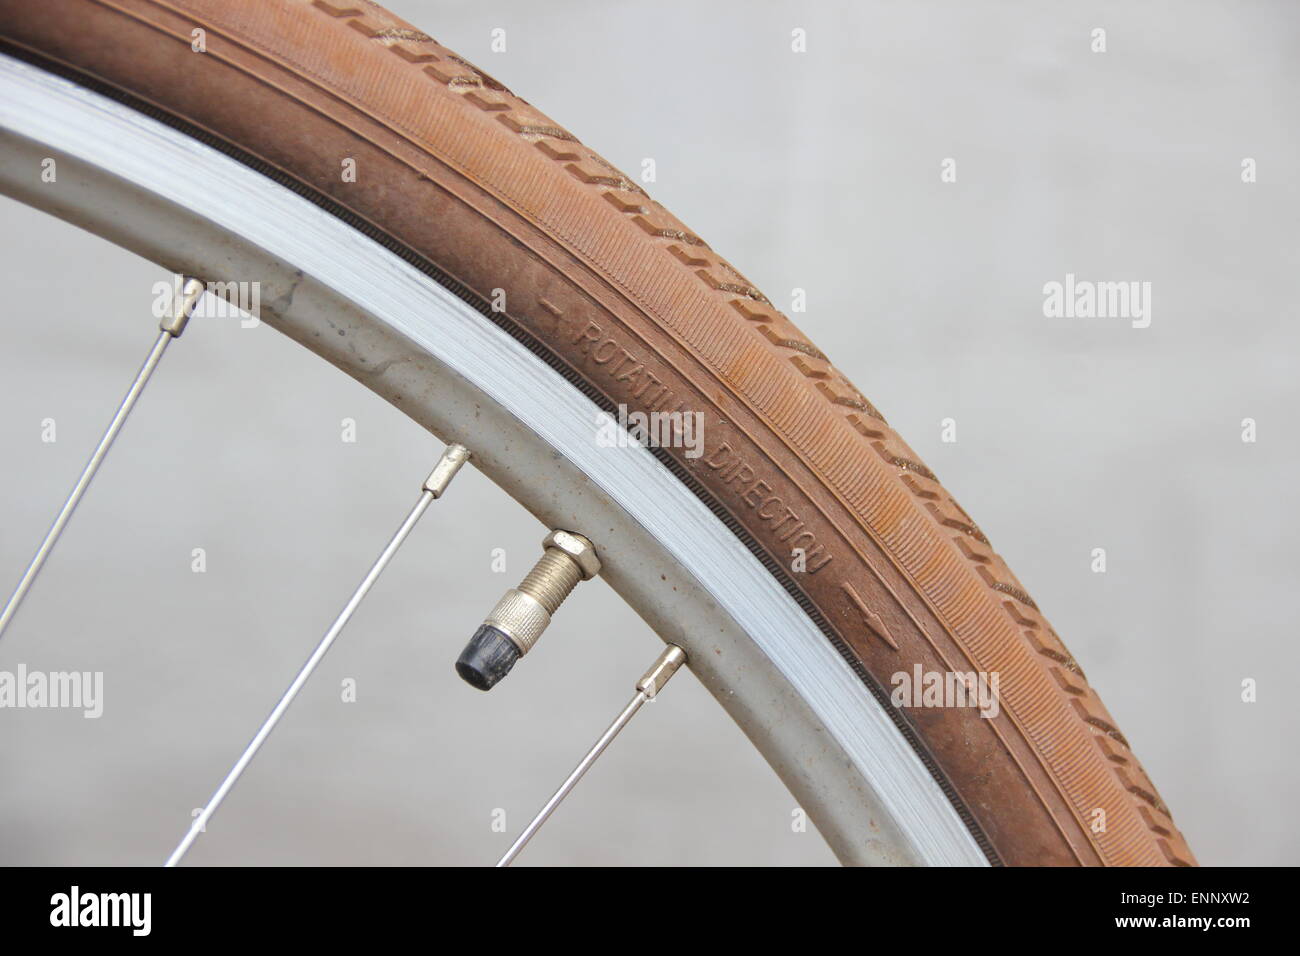 Ruotare la direzione sulla ruota di bicicletta con la valvola Foto Stock